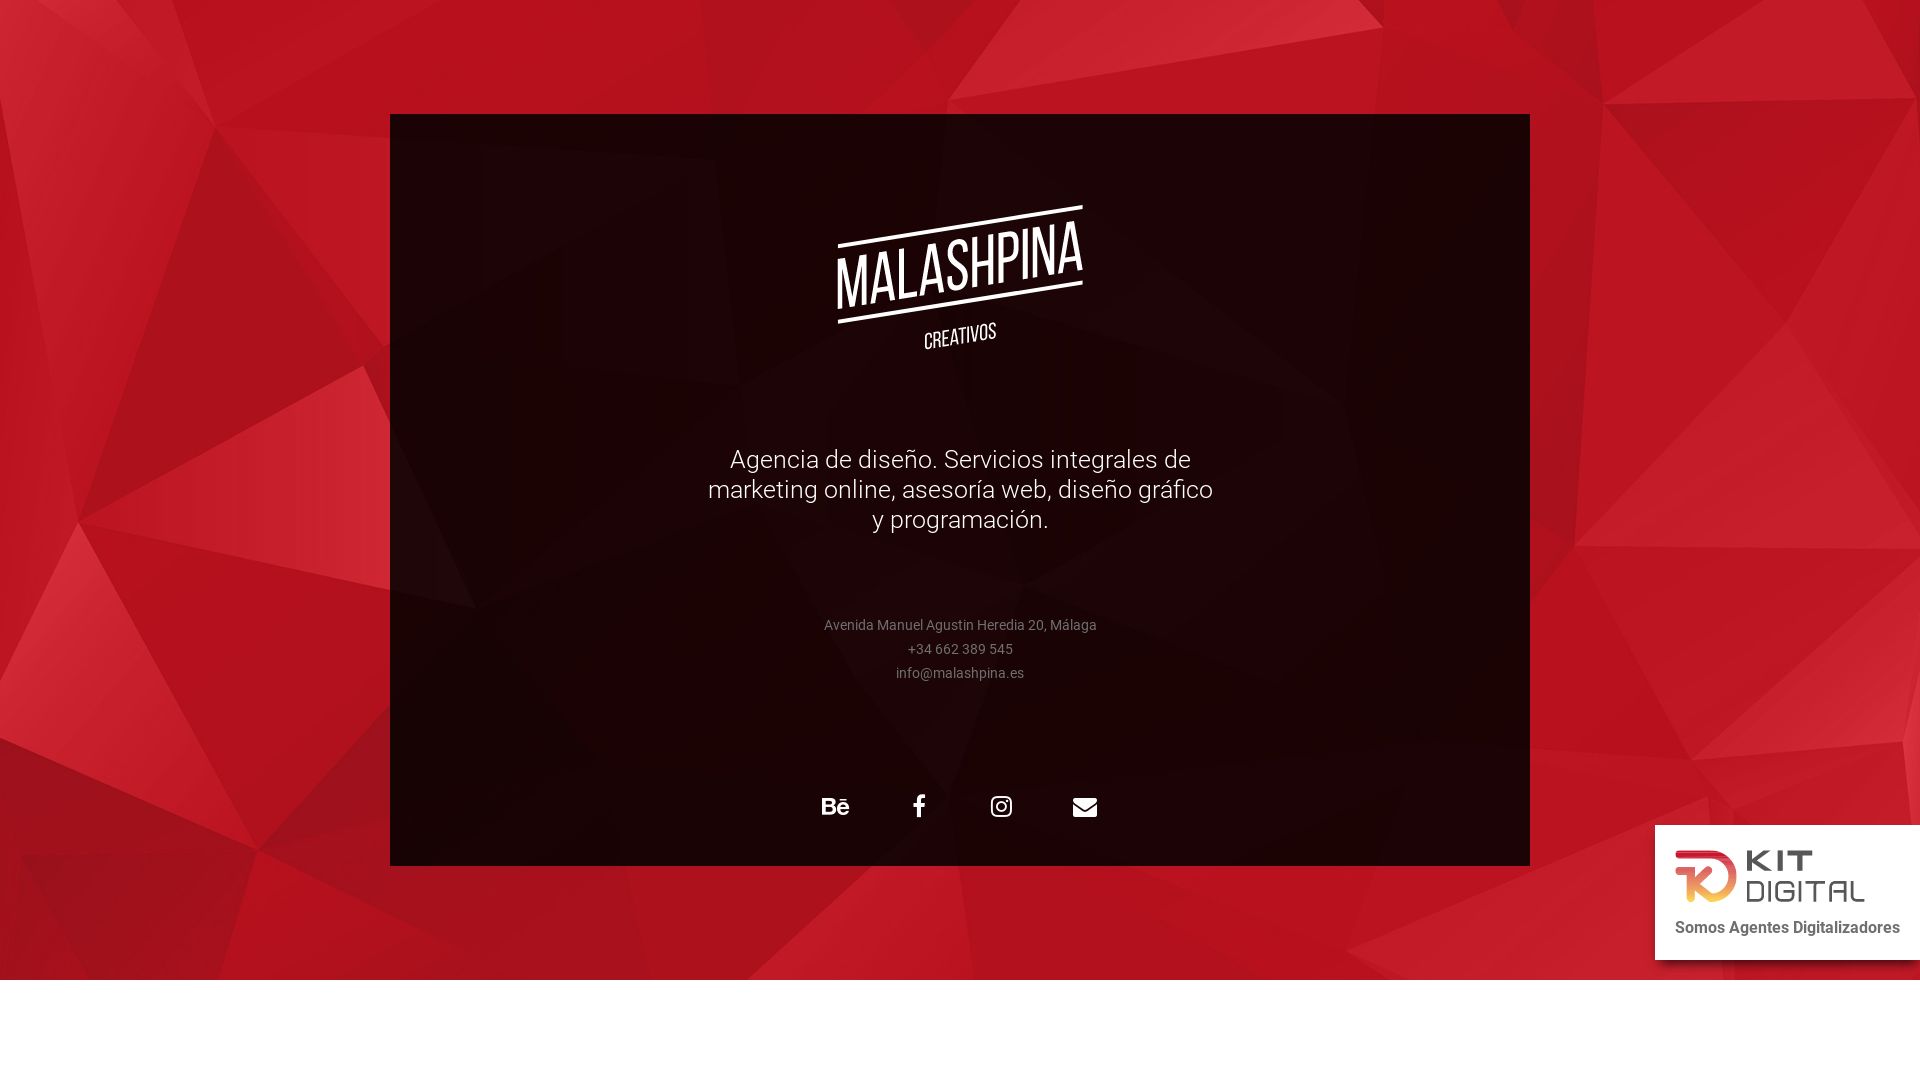 Статус сайта malashpina.es ОНЛАЙН